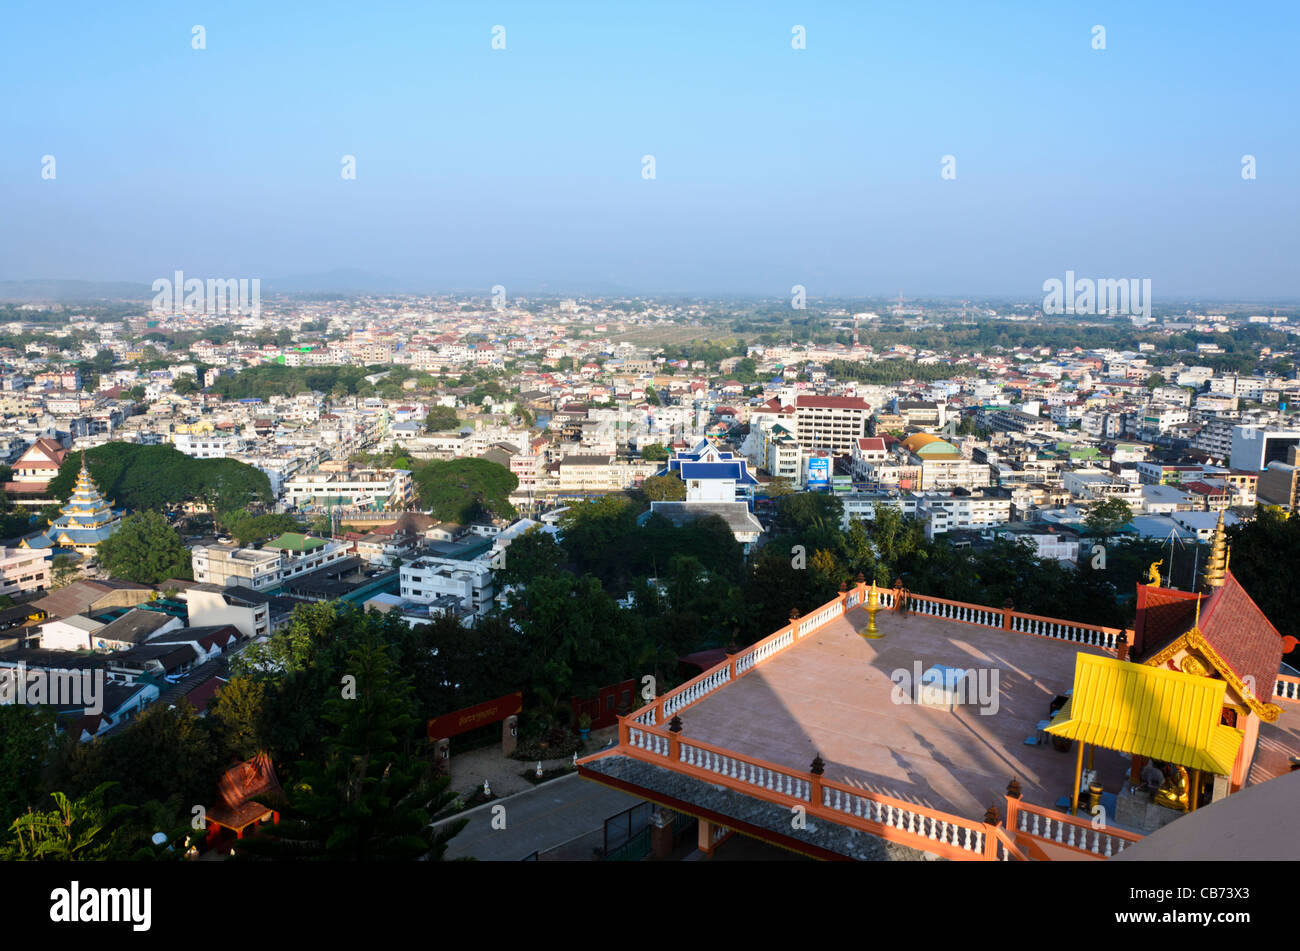 Vue de balcon sur le toit au temple bouddhiste thaï sur colline avec Tachileik Myanmar sur la gauche et de la droite sur la Thaïlande Maesai en dessous Banque D'Images